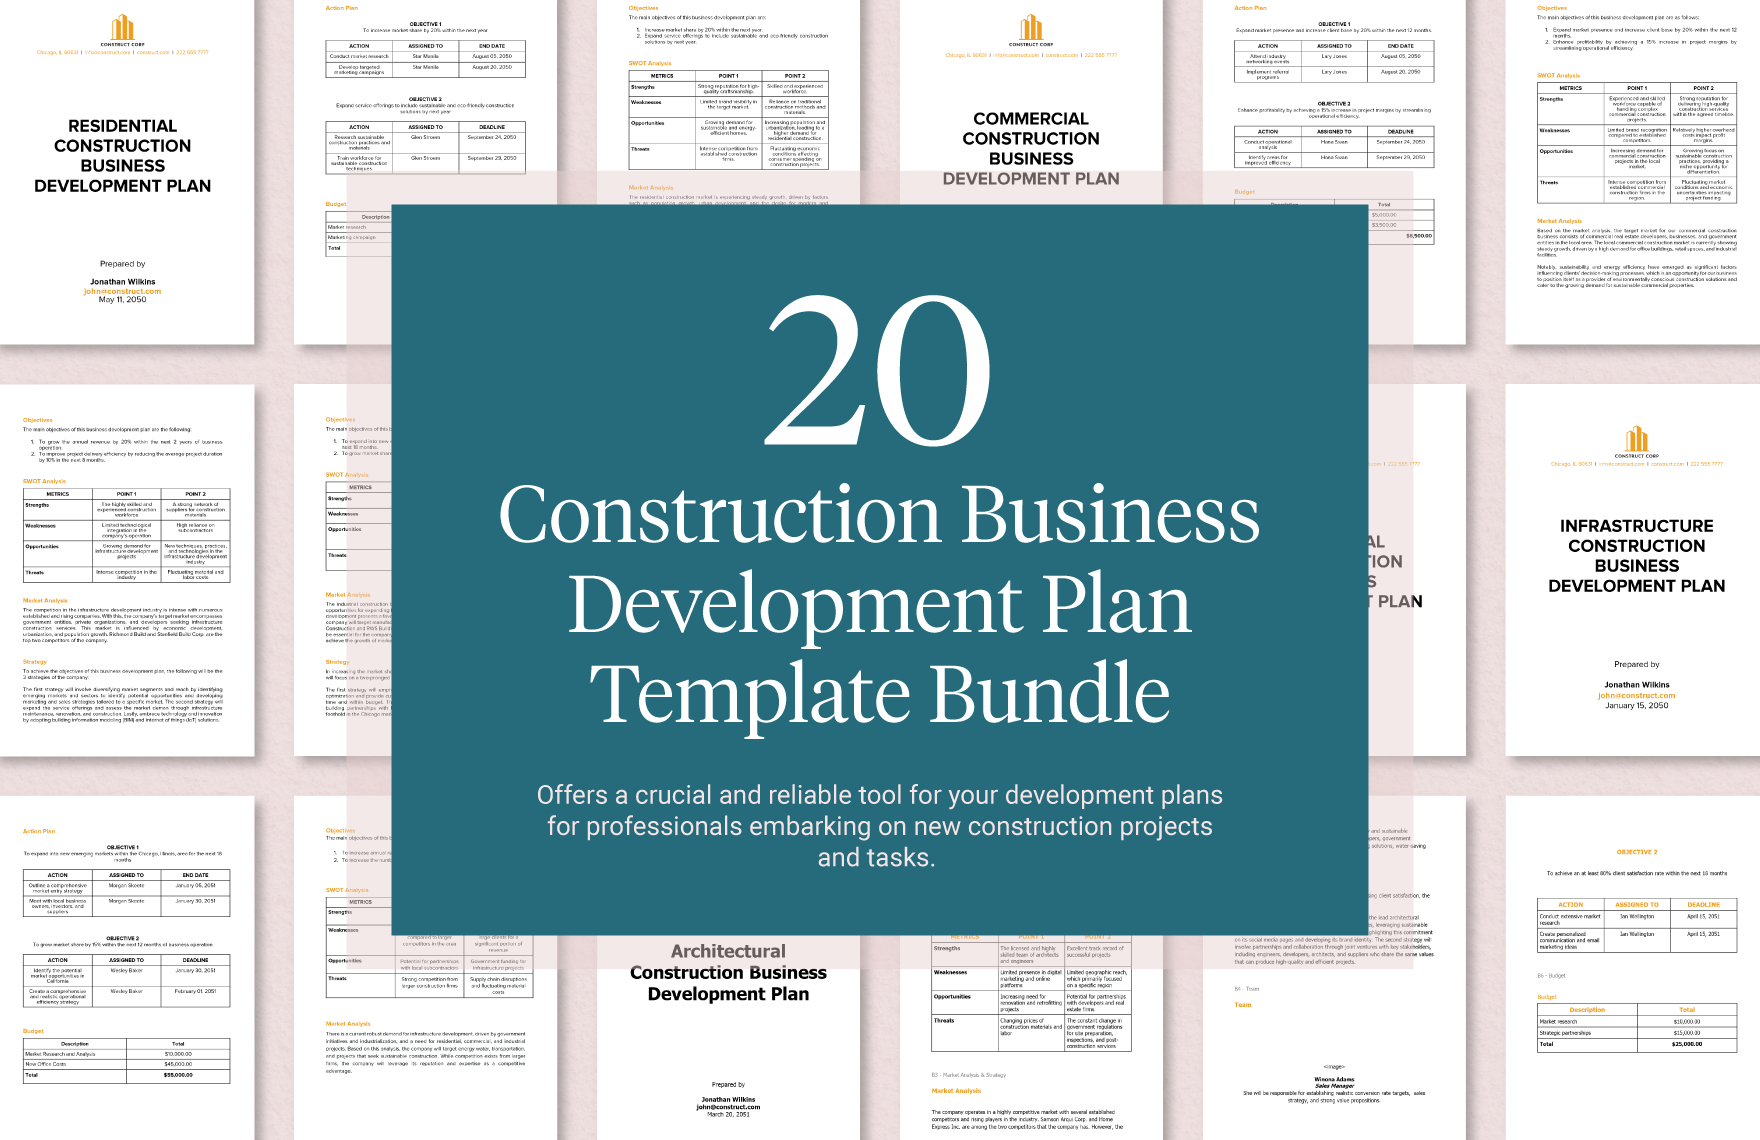 0 construction business development plan template bundle